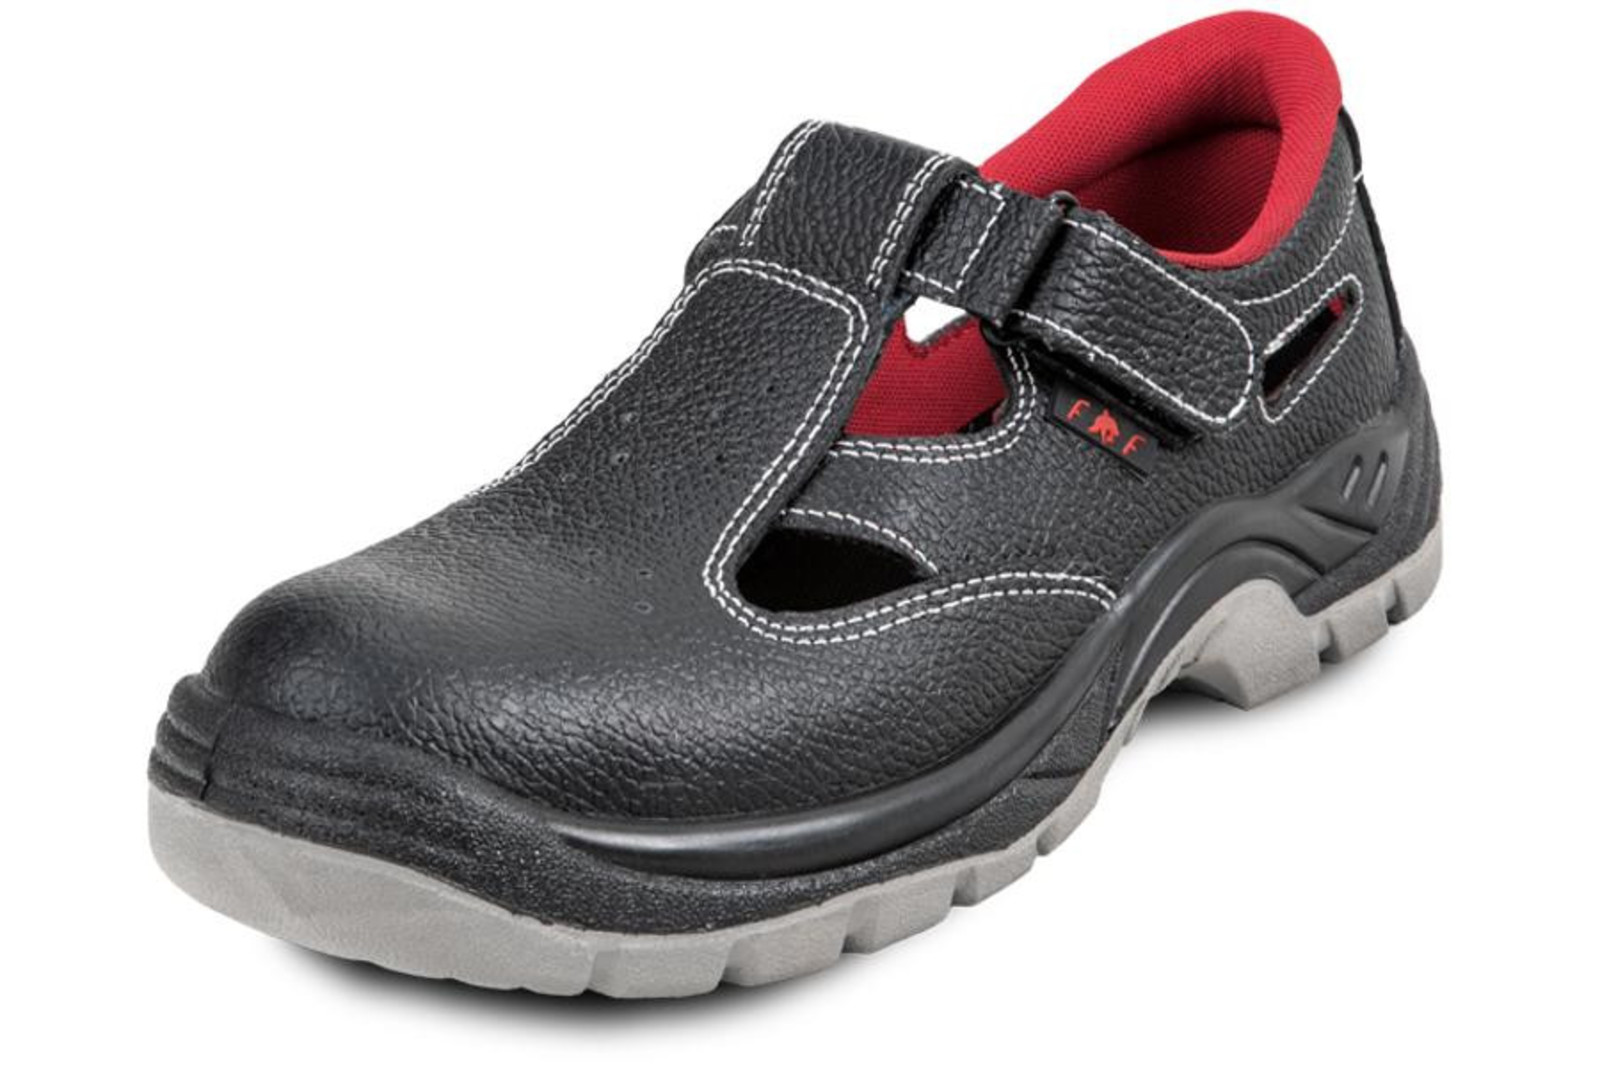 Pracovné sandále Bonn SC 01-002 O1 - veľkosť: 44, farba: čierna